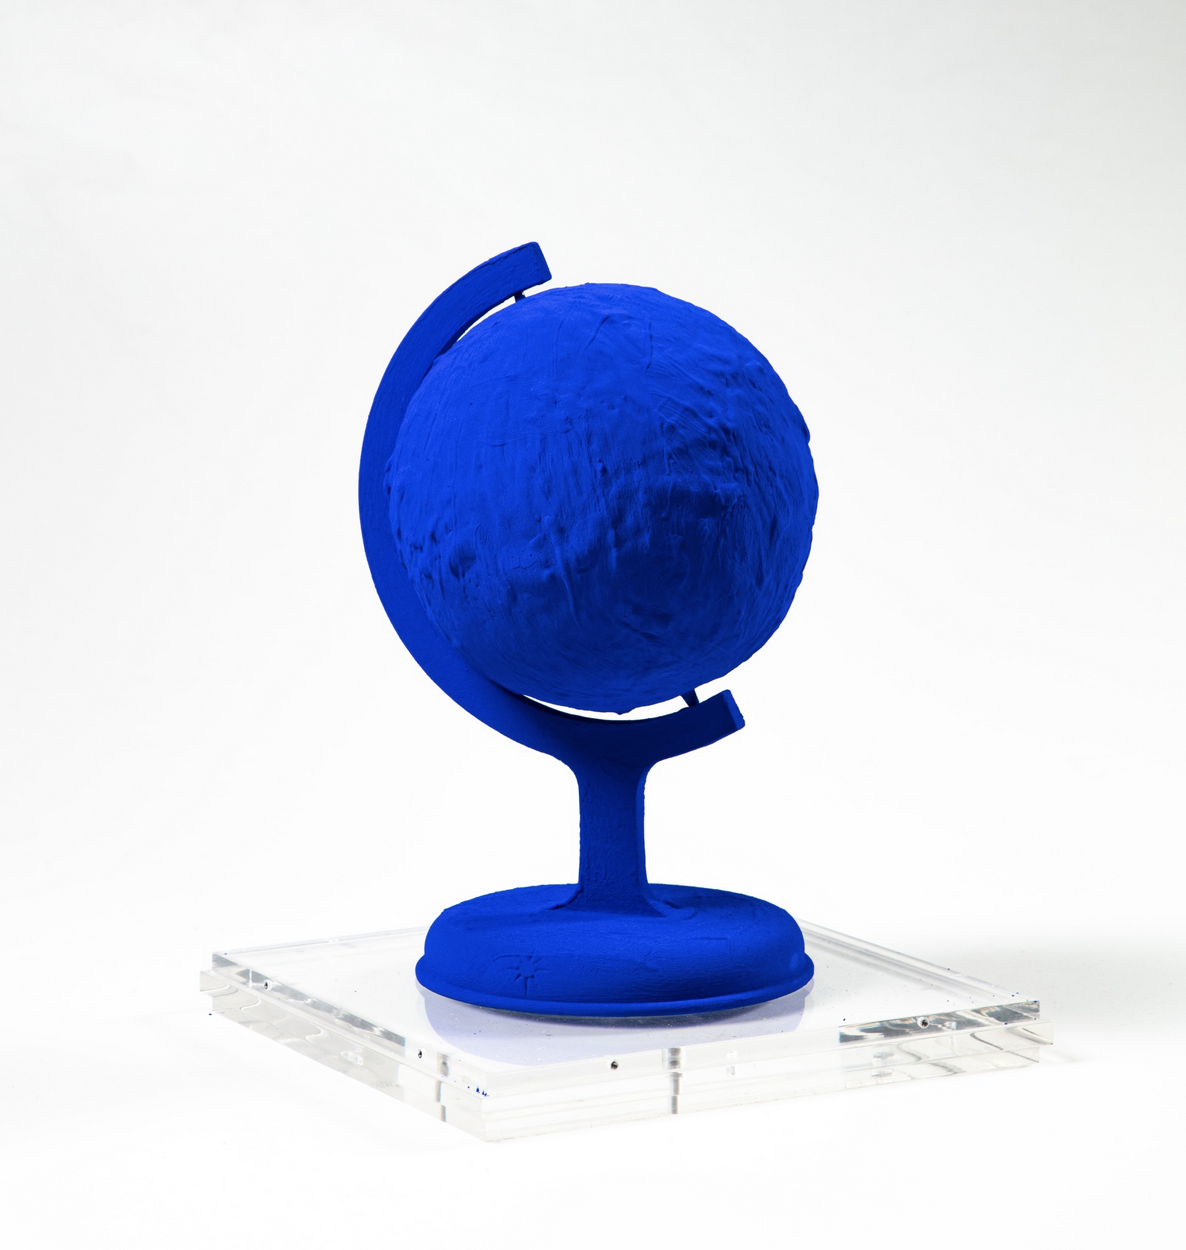 Yves Klein - La terre bleue, 1957-1988